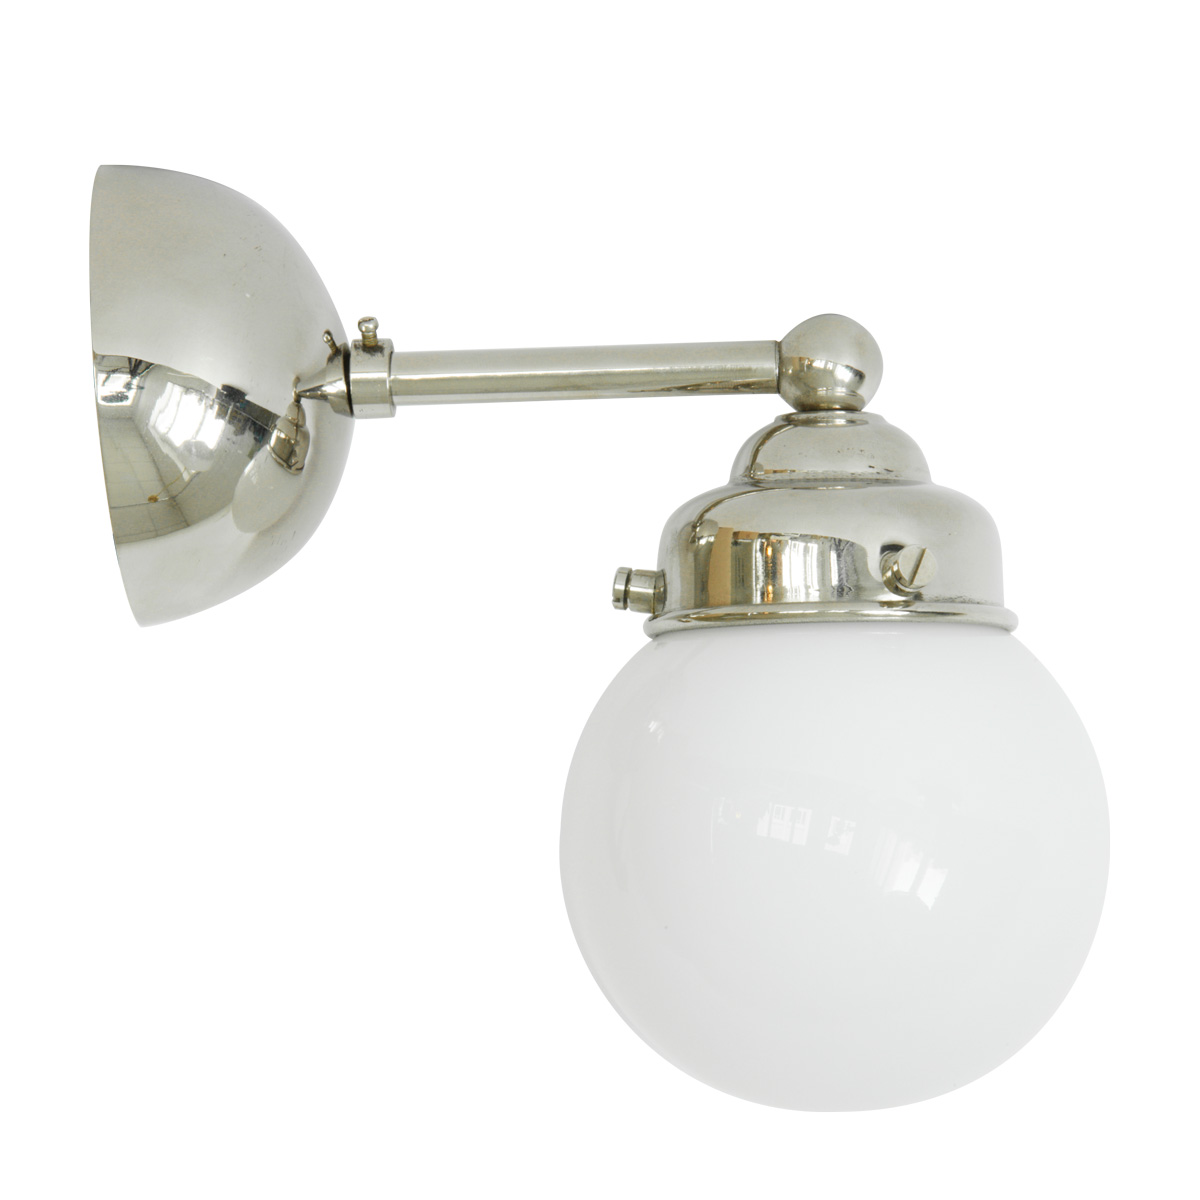 Kleine Kugel-Wandlampe mit Opalglas Ø 10 cm: Kleine Kugel-Wandleuchte (Opalglas, Ø 10 cm), hier mit Halterung aus glanzvernickeltem Messing